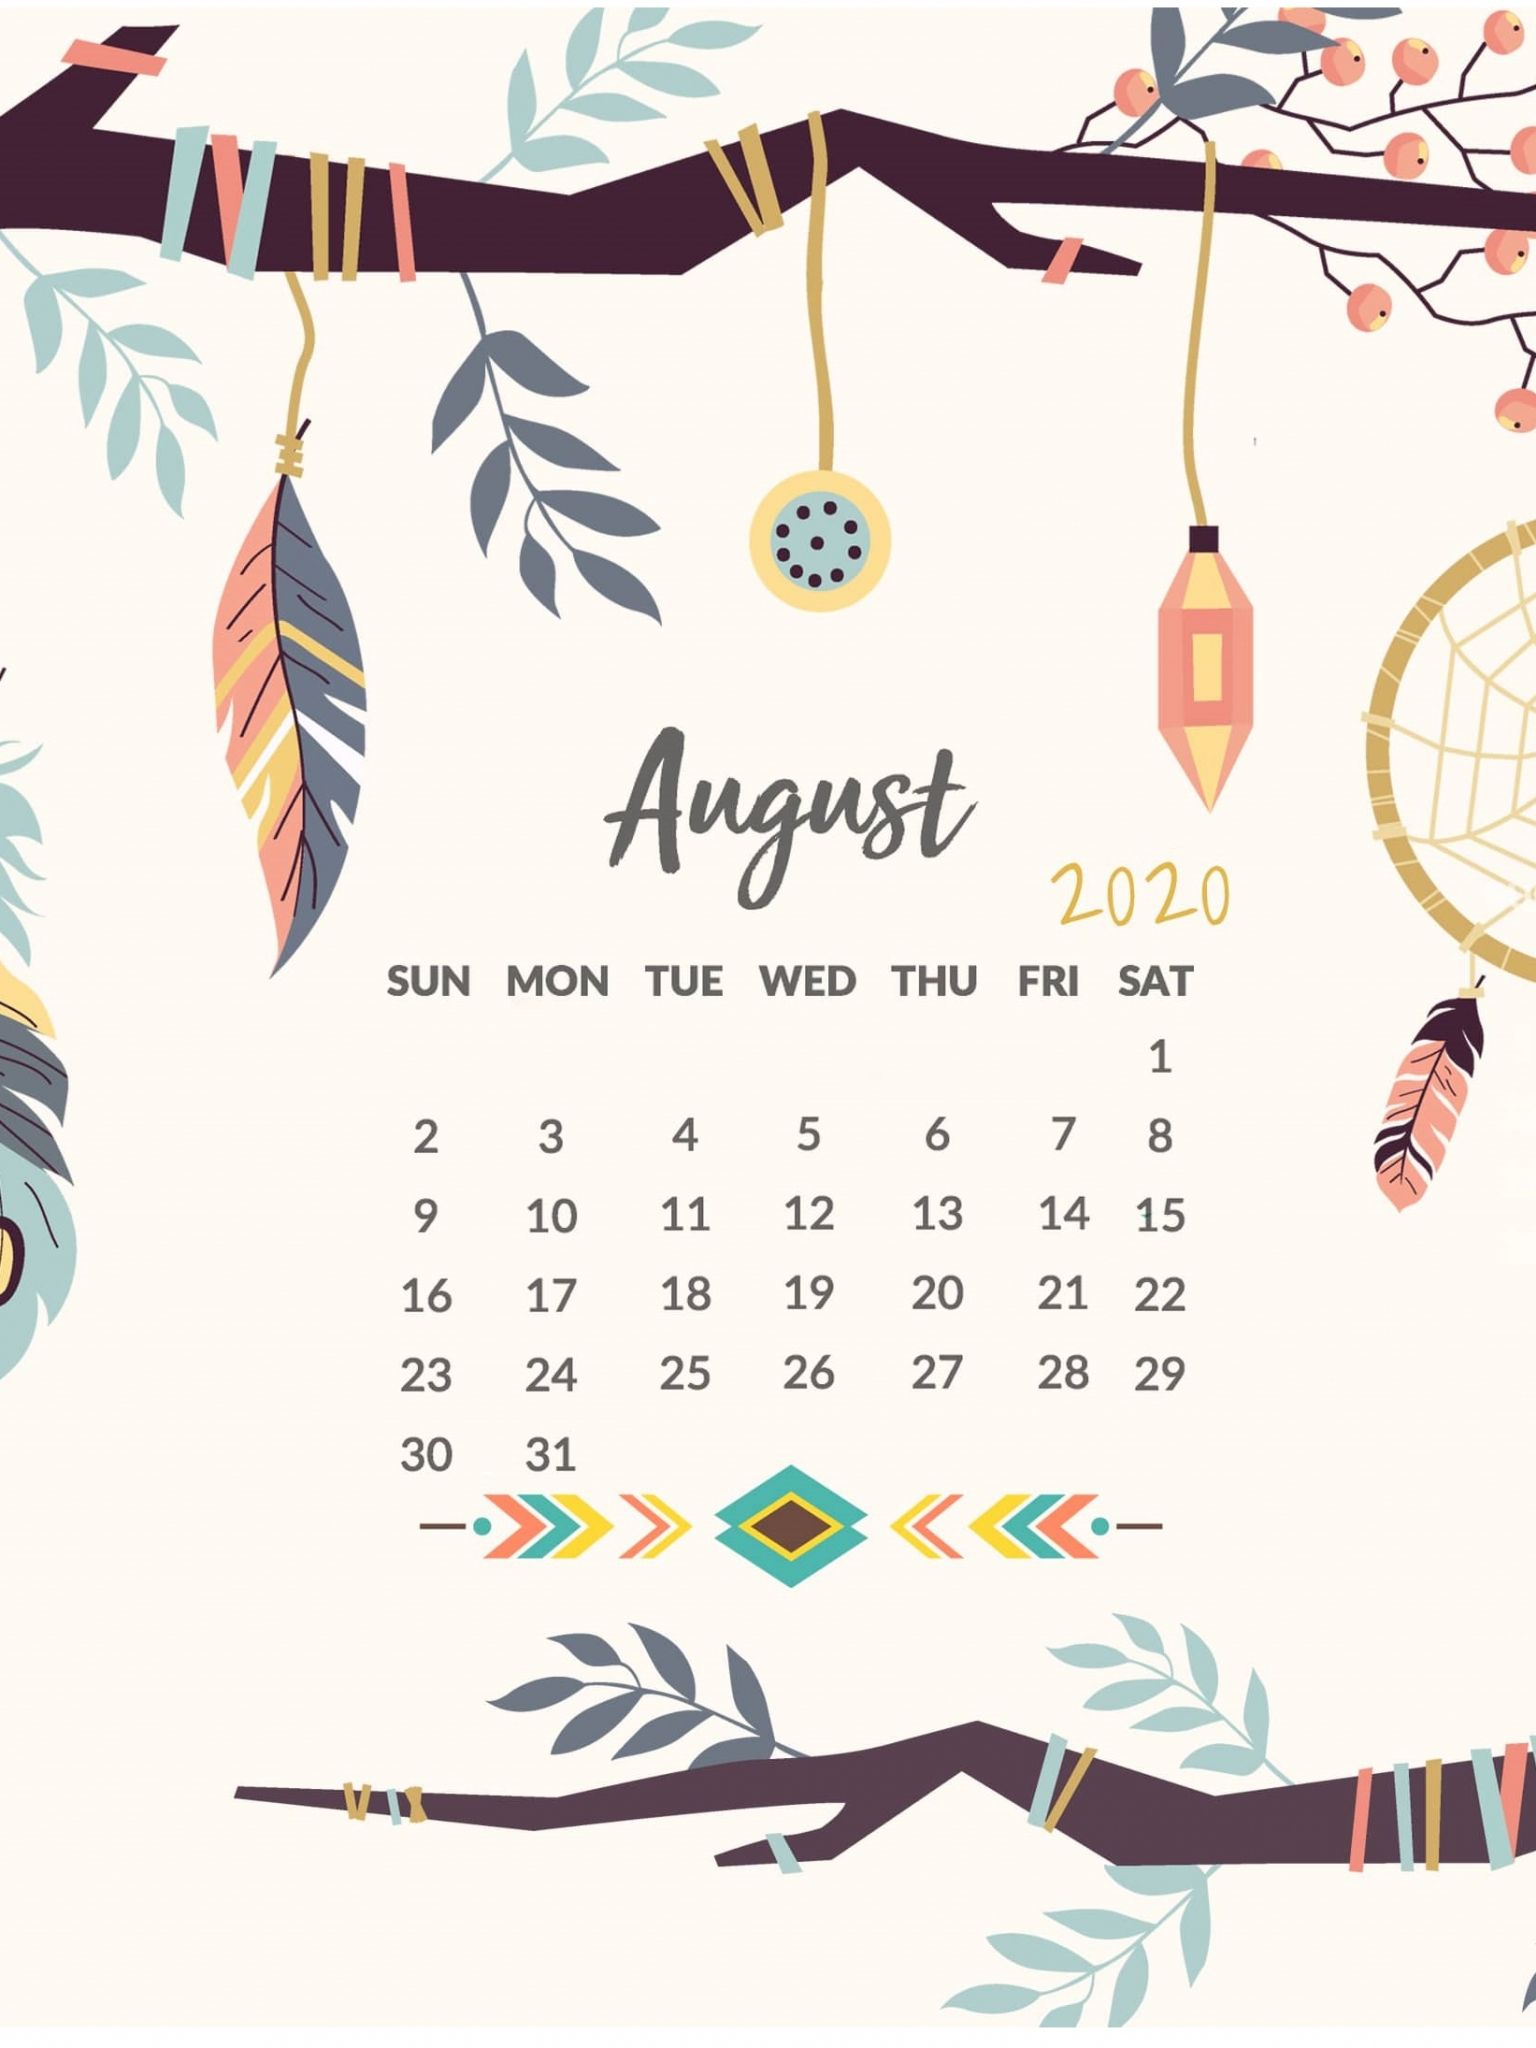 August 2022 calendar wallpaper  August wallpaper Calendar wallpaper  Calendar background